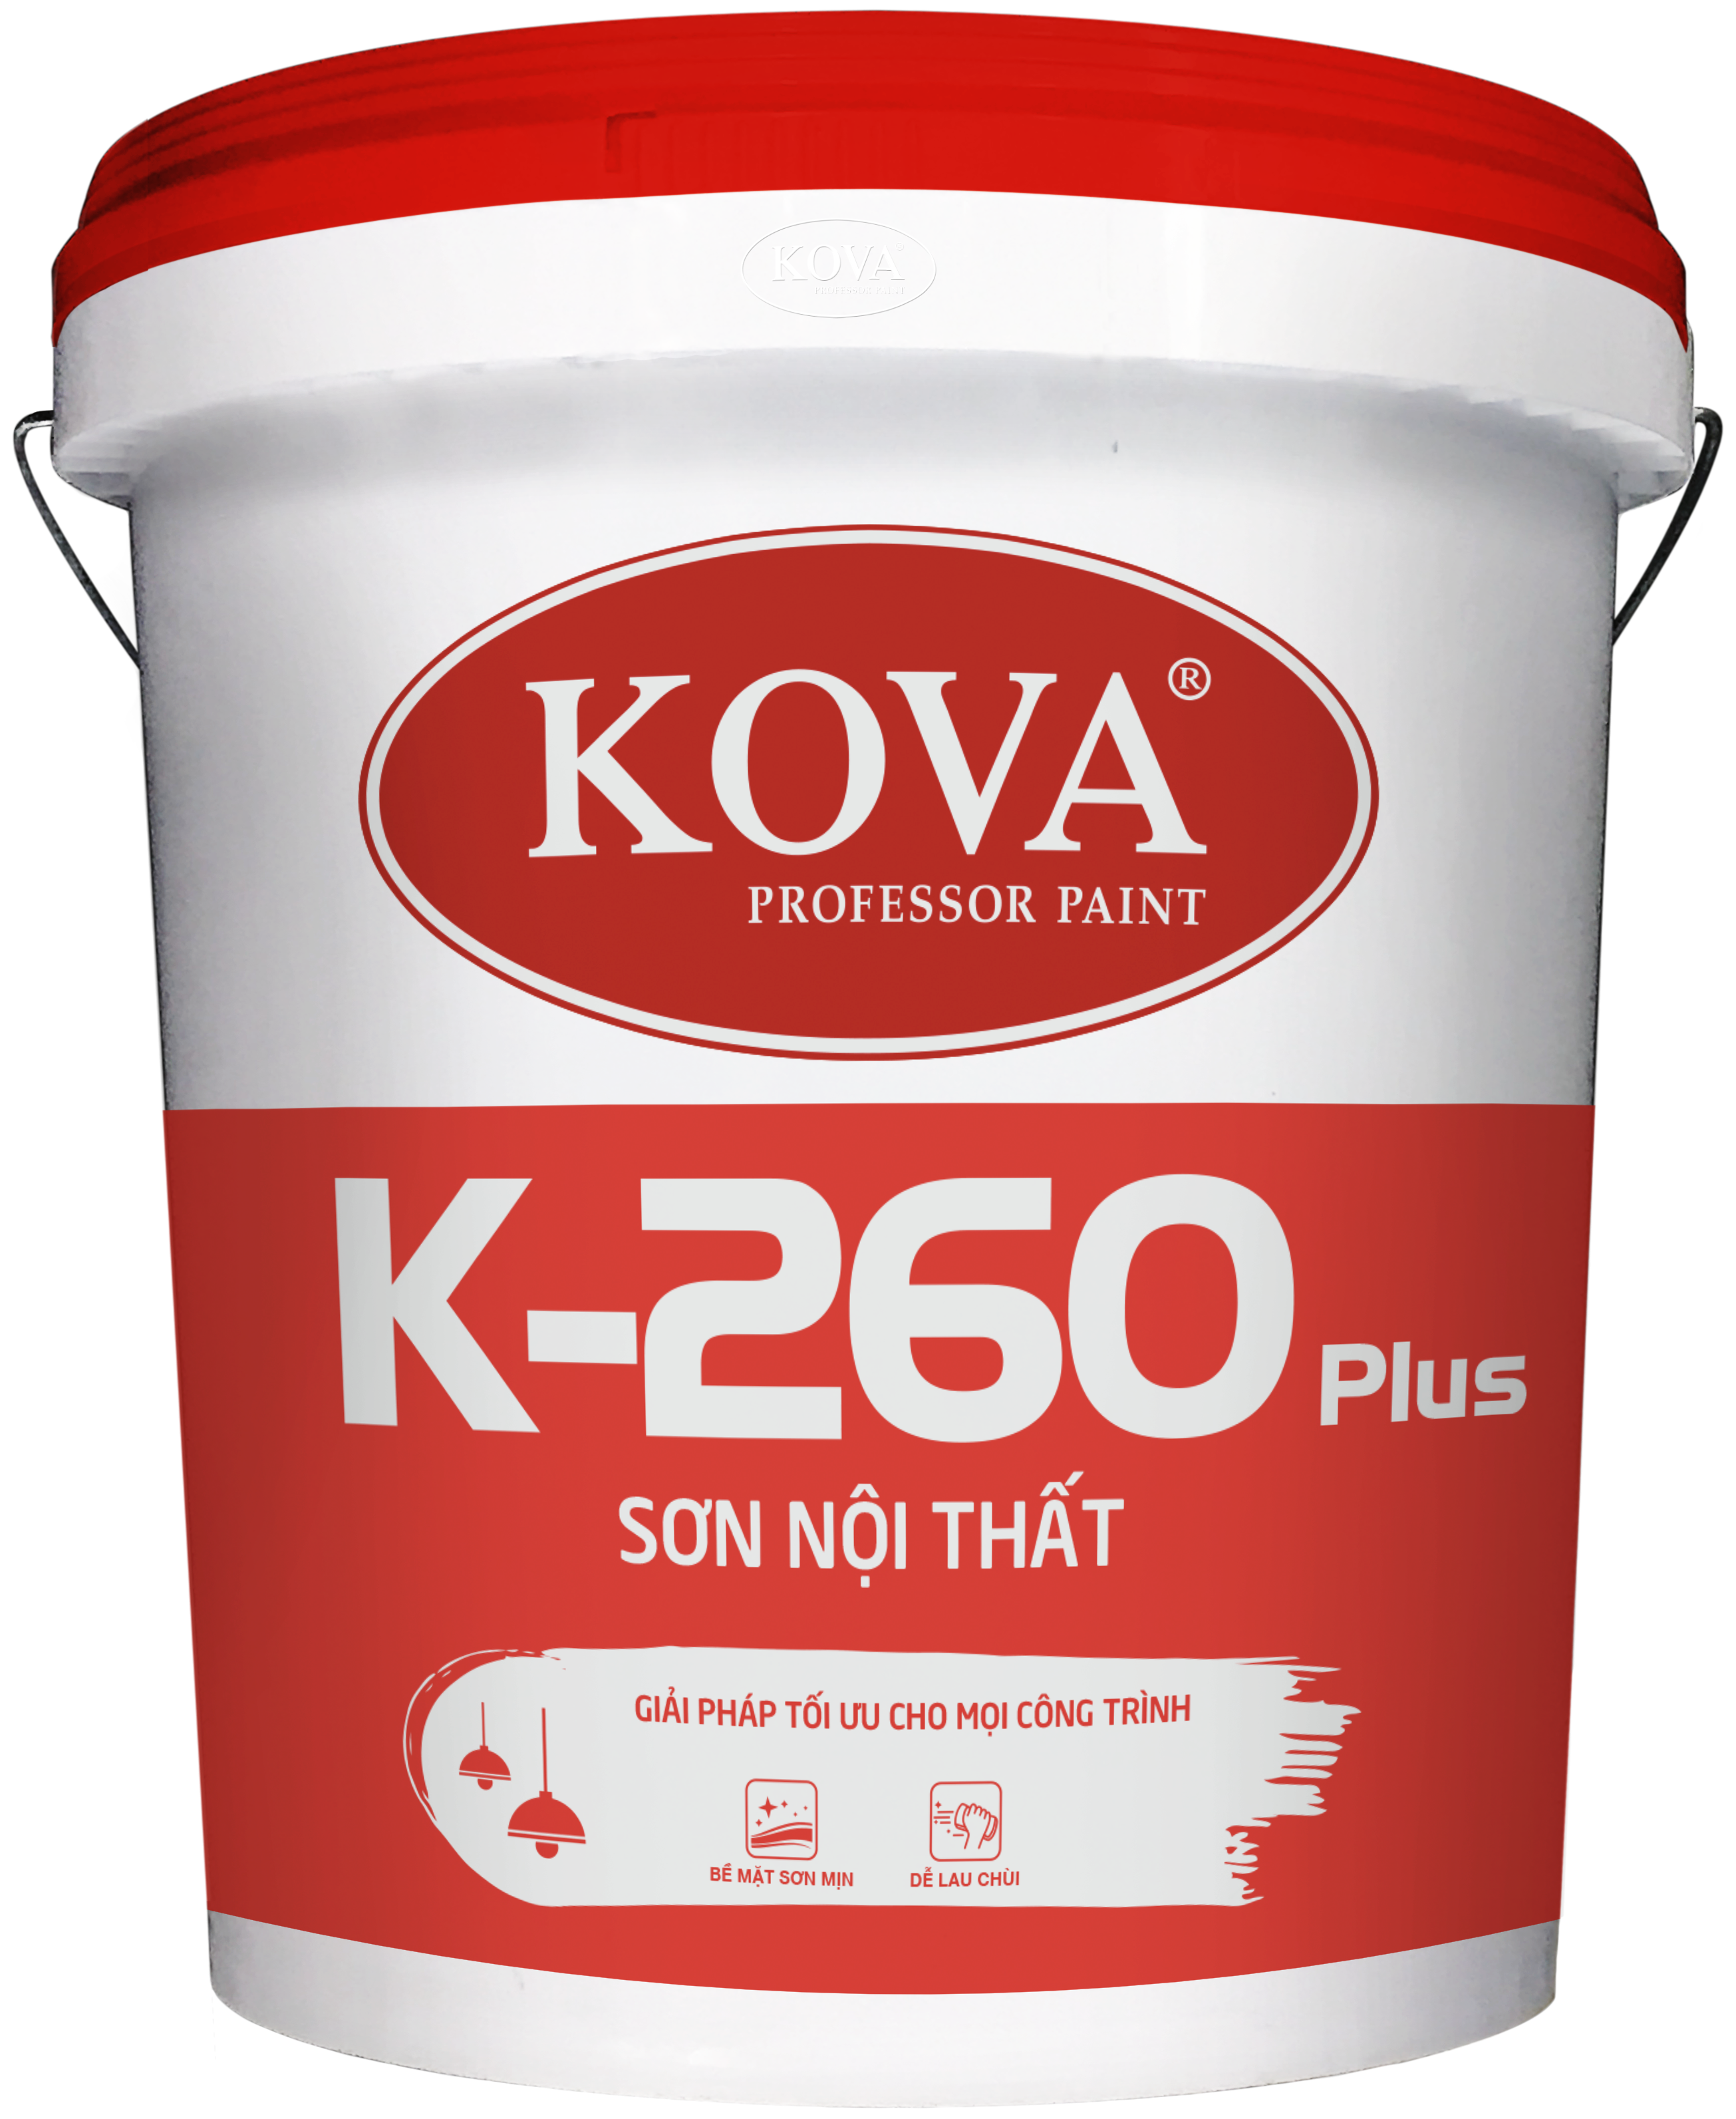 Sơn nội thất KOVA K-260 Plus